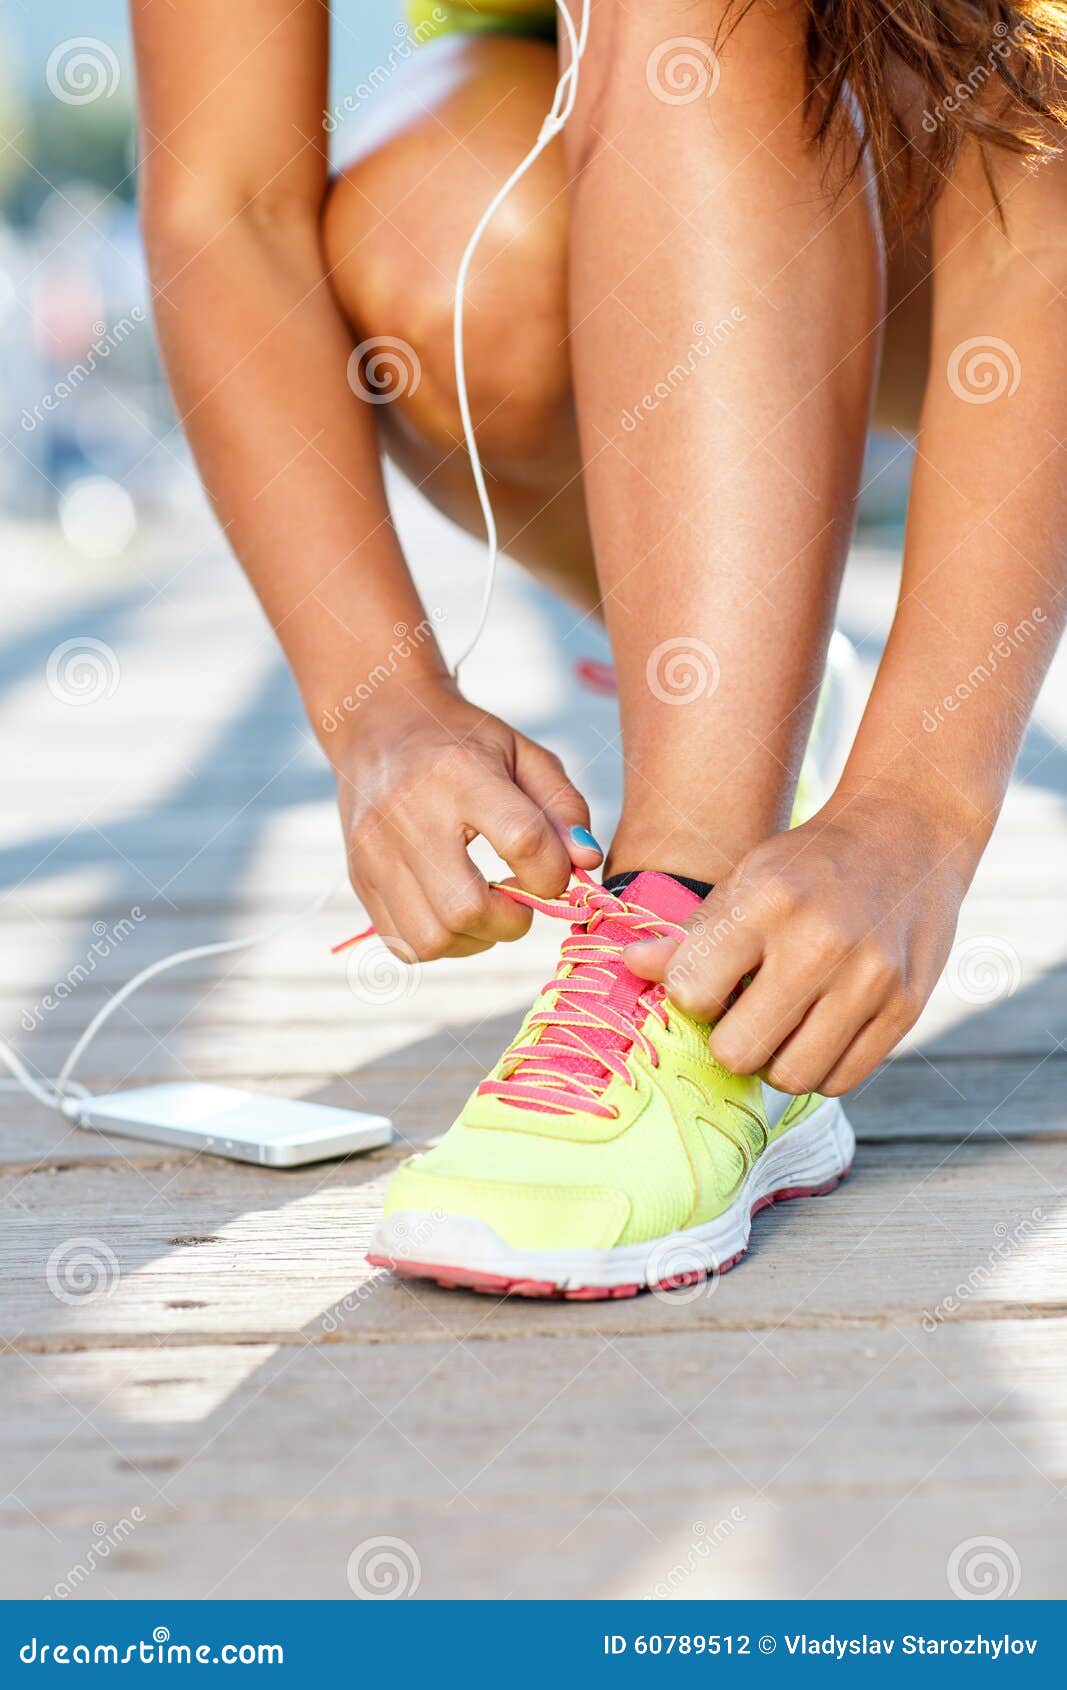 Zapatillas Deportivas - Mujer Que Ata Cordones De Zapato Primer Del Deporte  Femenino Foto de archivo - Imagen de rosa, calzado: 60789512